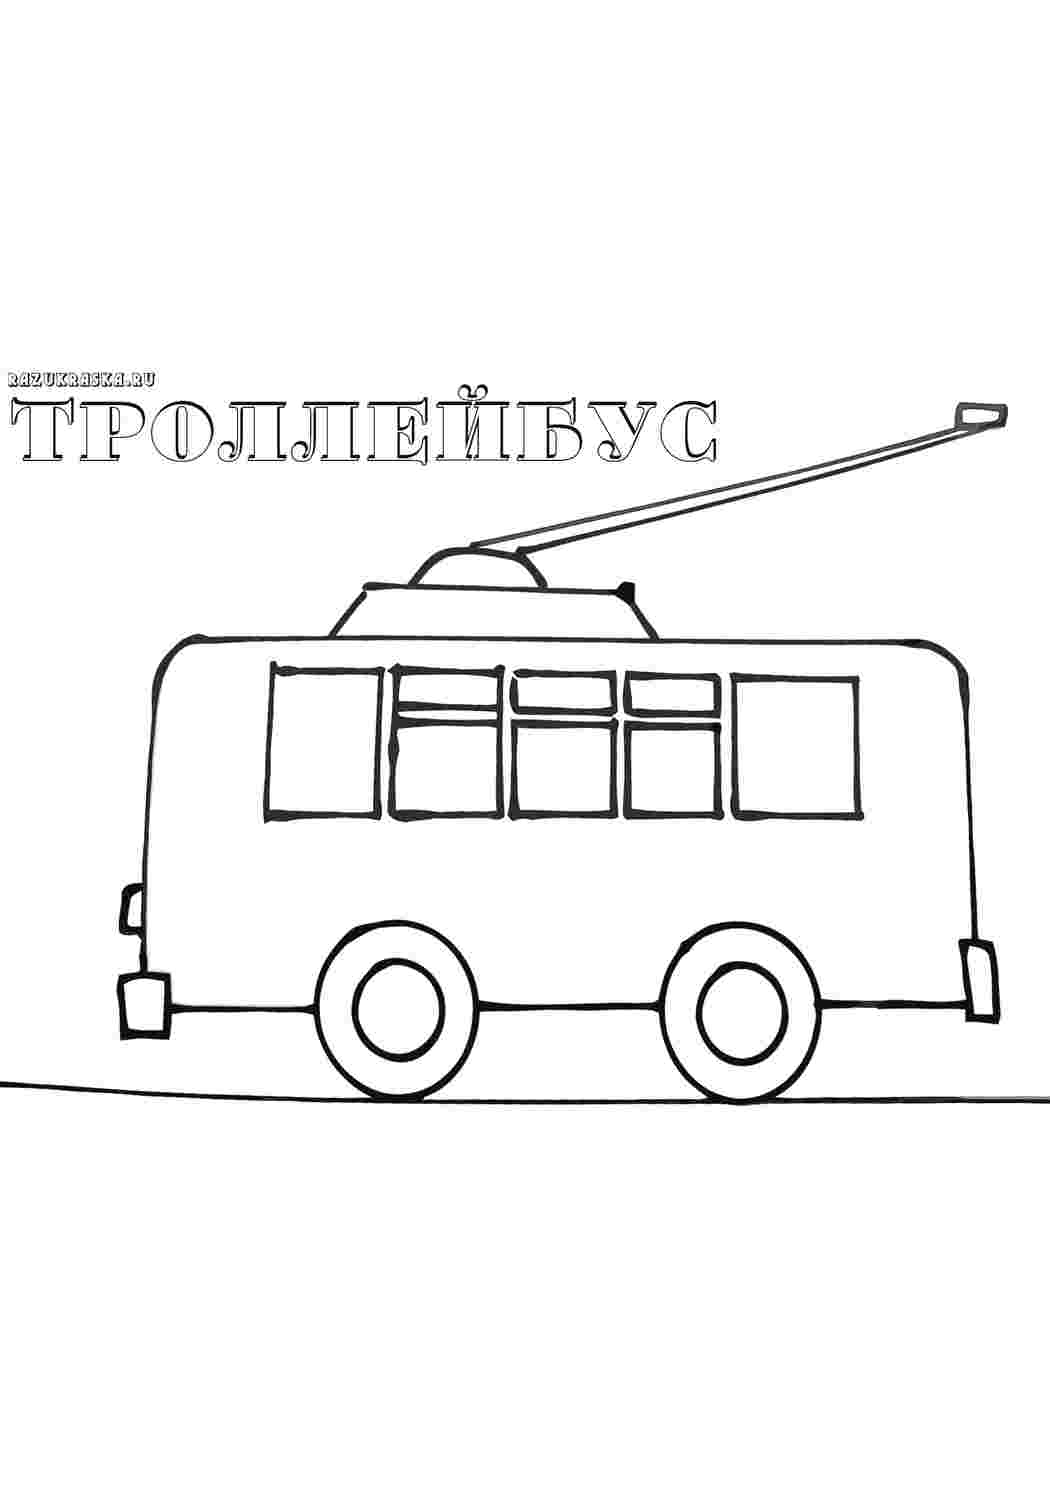 Автобус рисунок | Draw, Horizontal, Perspective